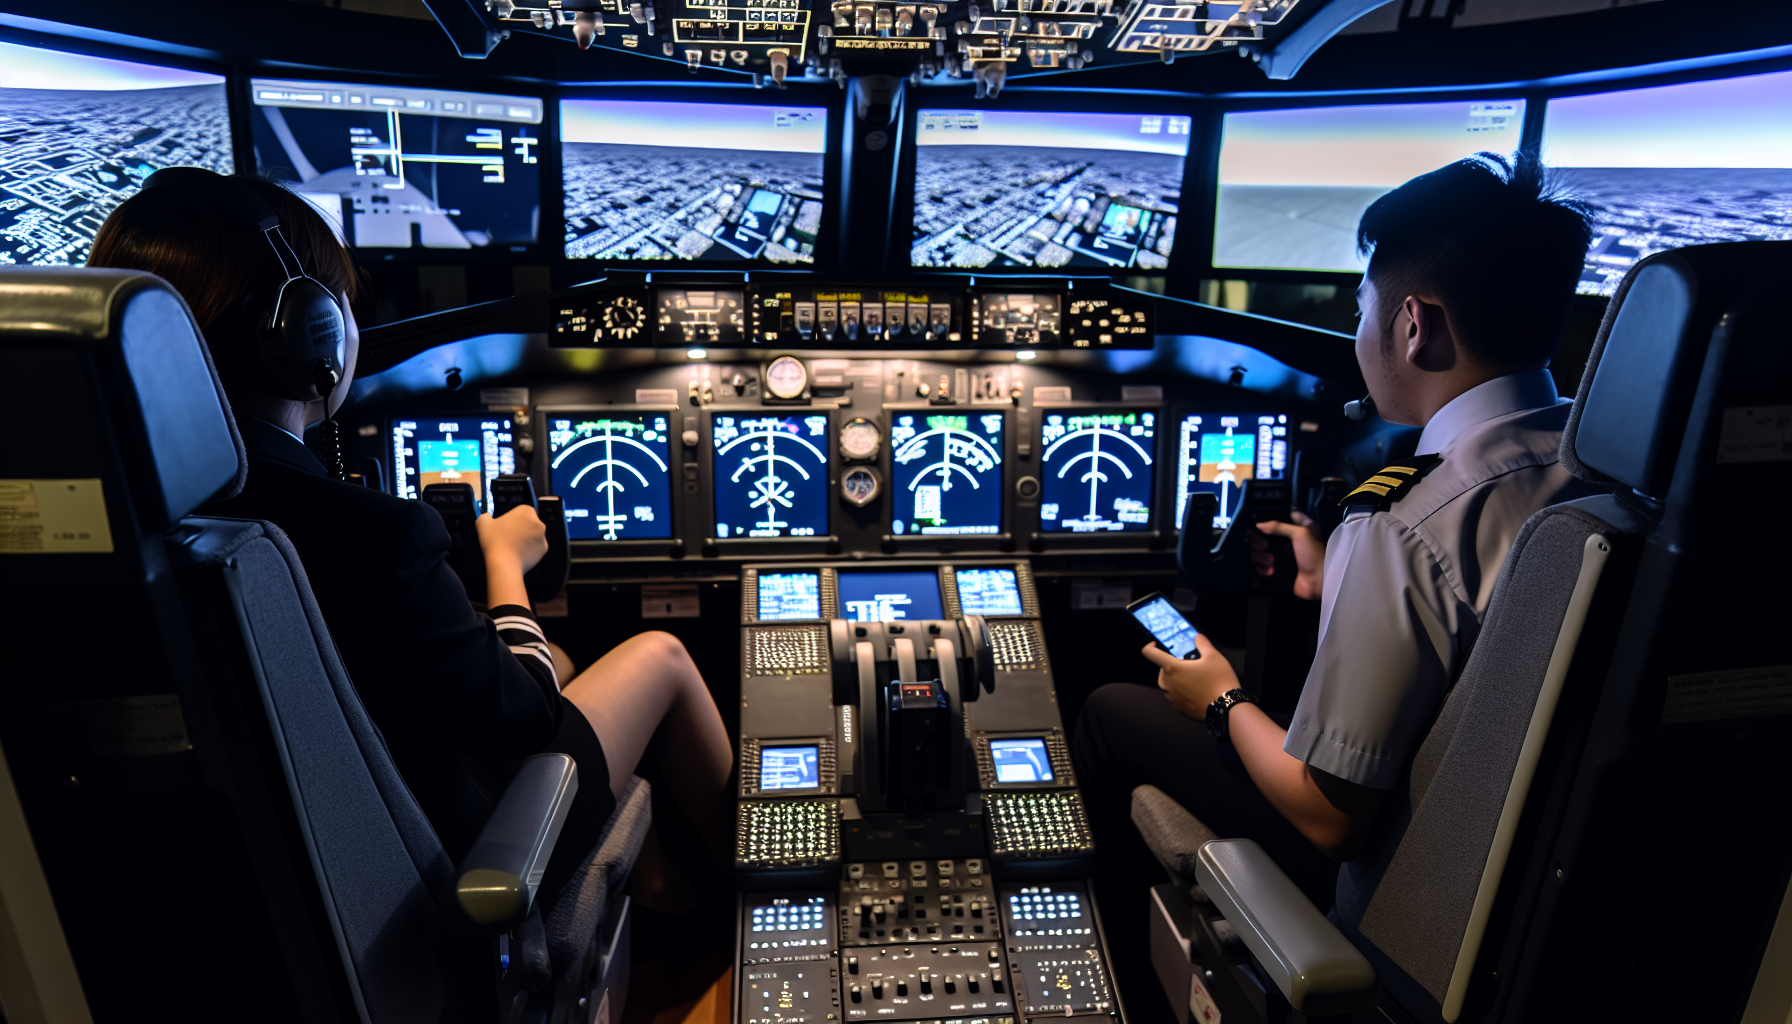 Full flight simulator for instrument rating training